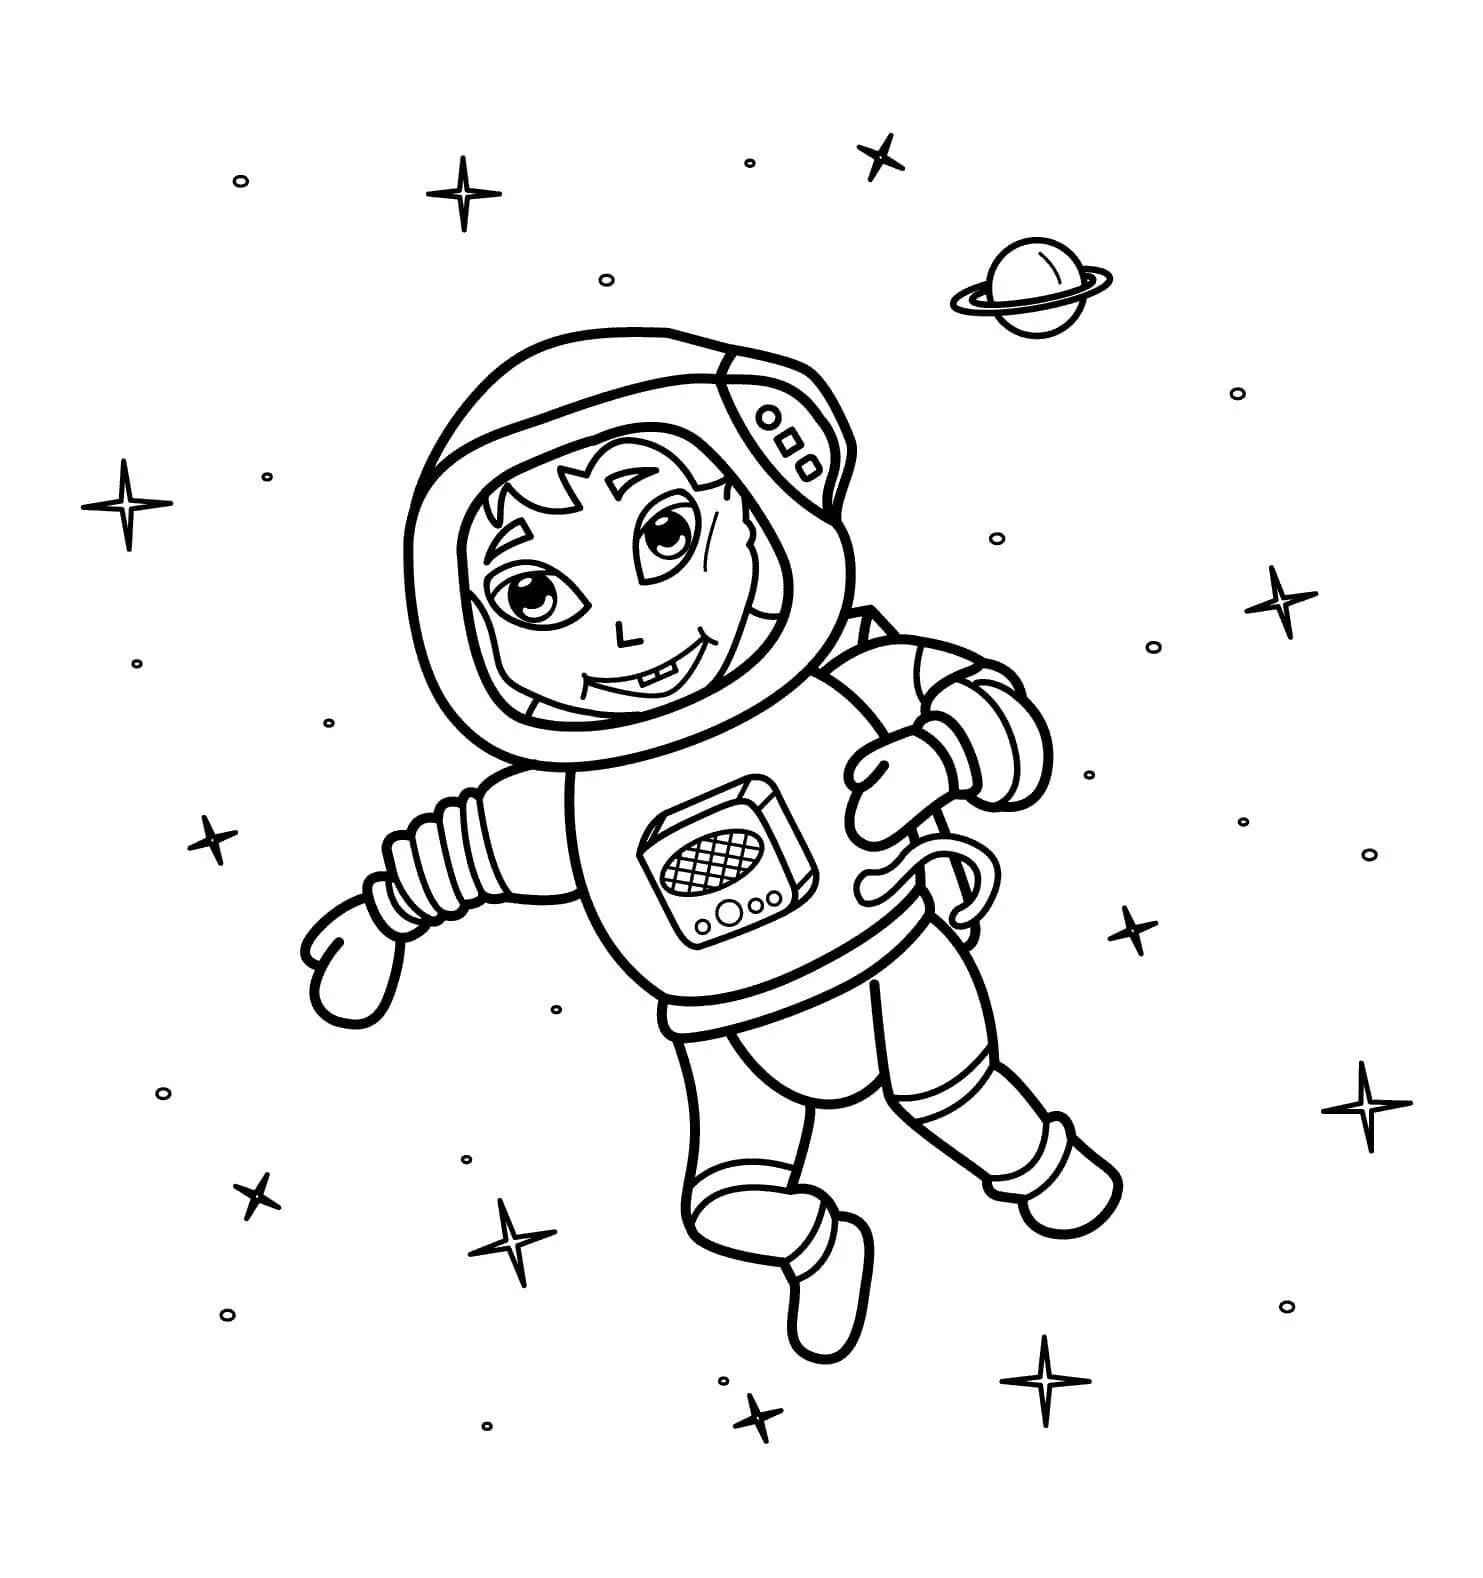 Космонавт раскраска для детей. Космос раскраска для детей. Раскраска про космос и Космонавтов для детей. Космонавт для раскрашивания для детей. День космонавтики картинки раскраски